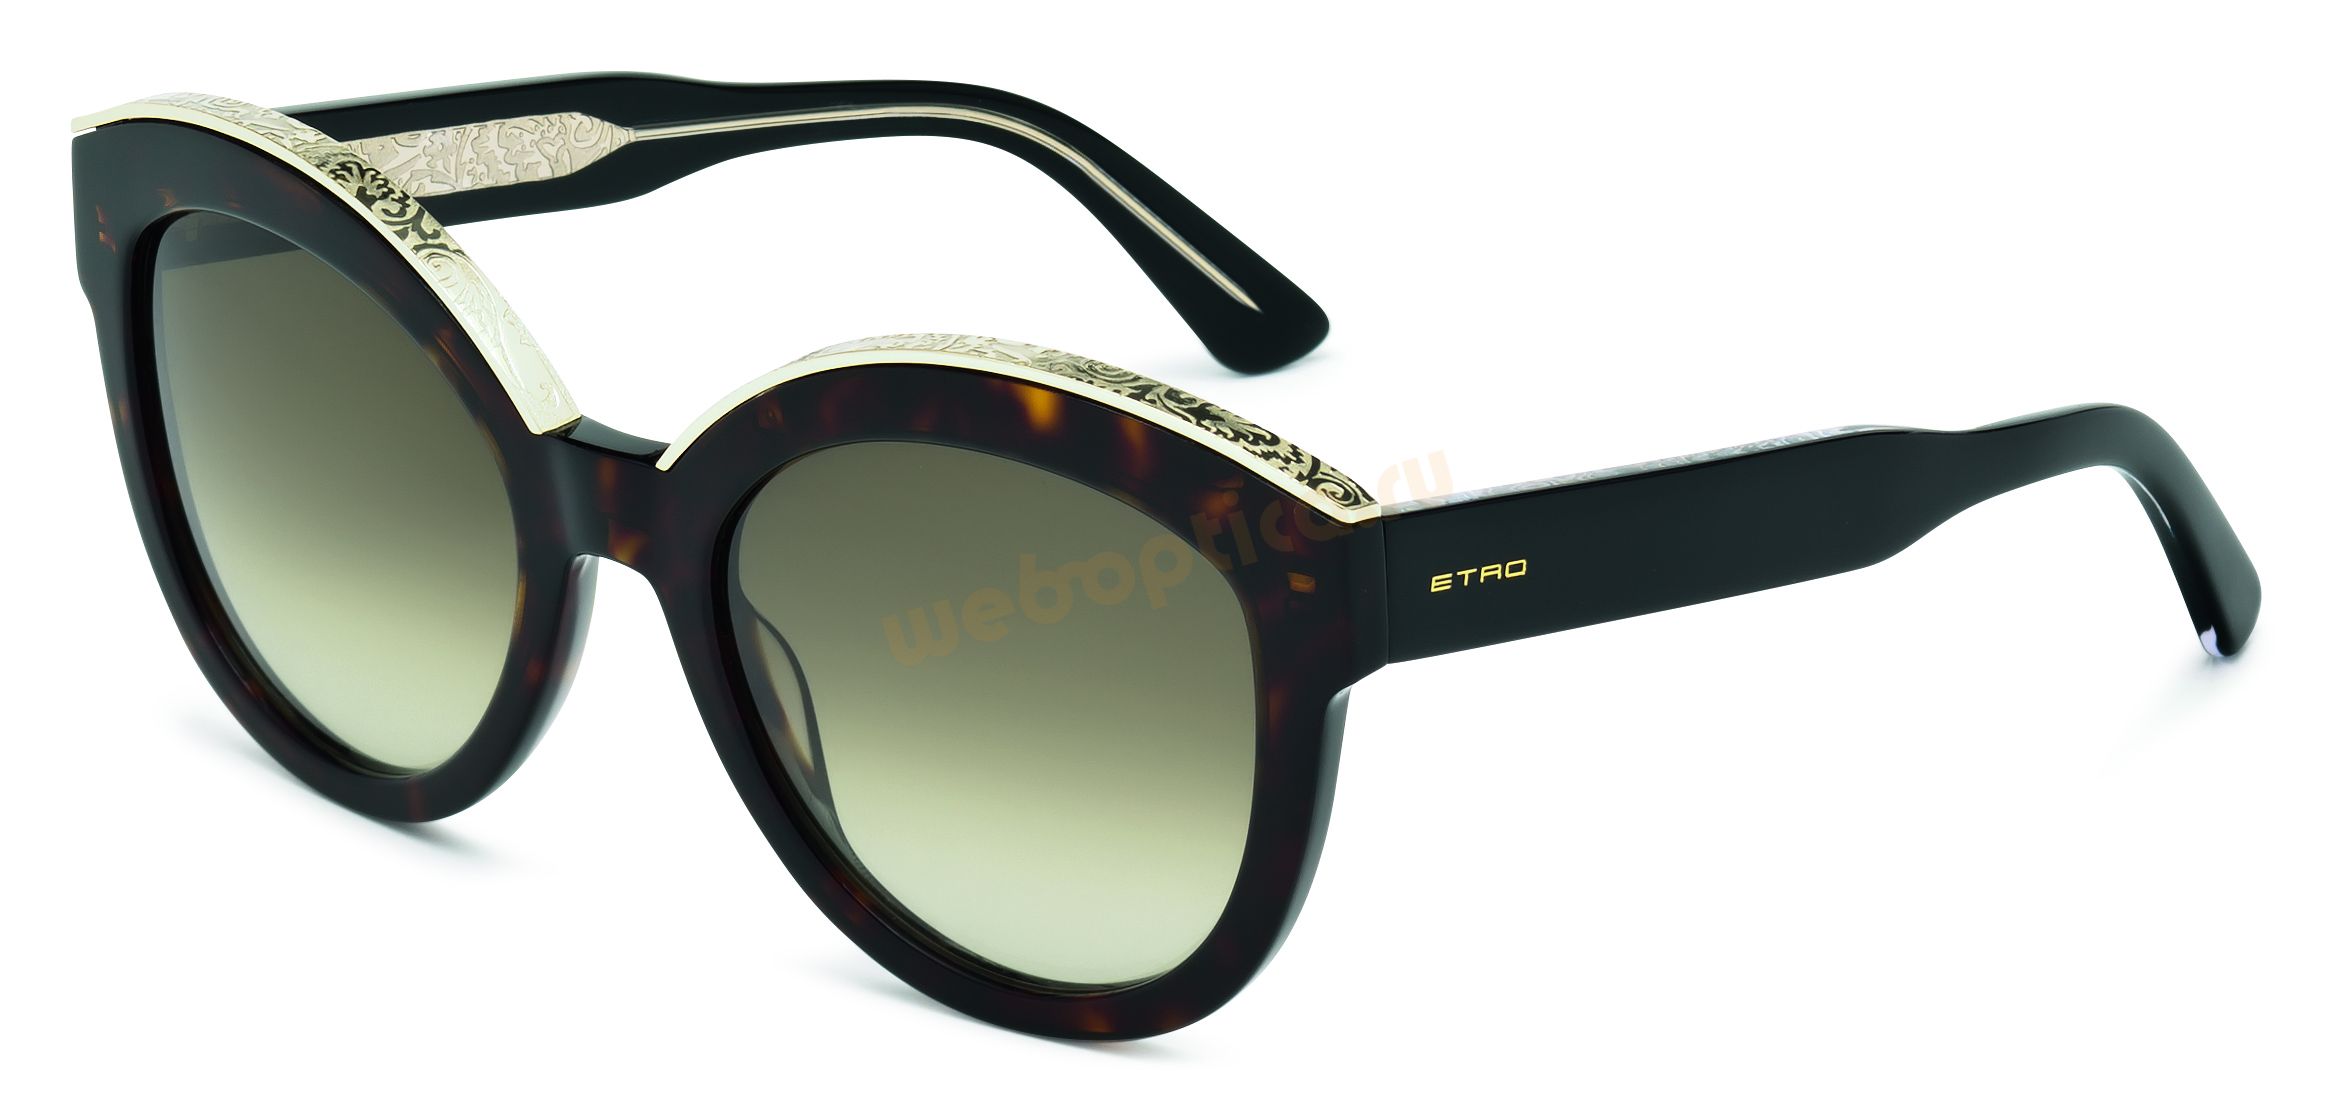 Солнцезащитные очки Etro 604S-215 купить в москве цена